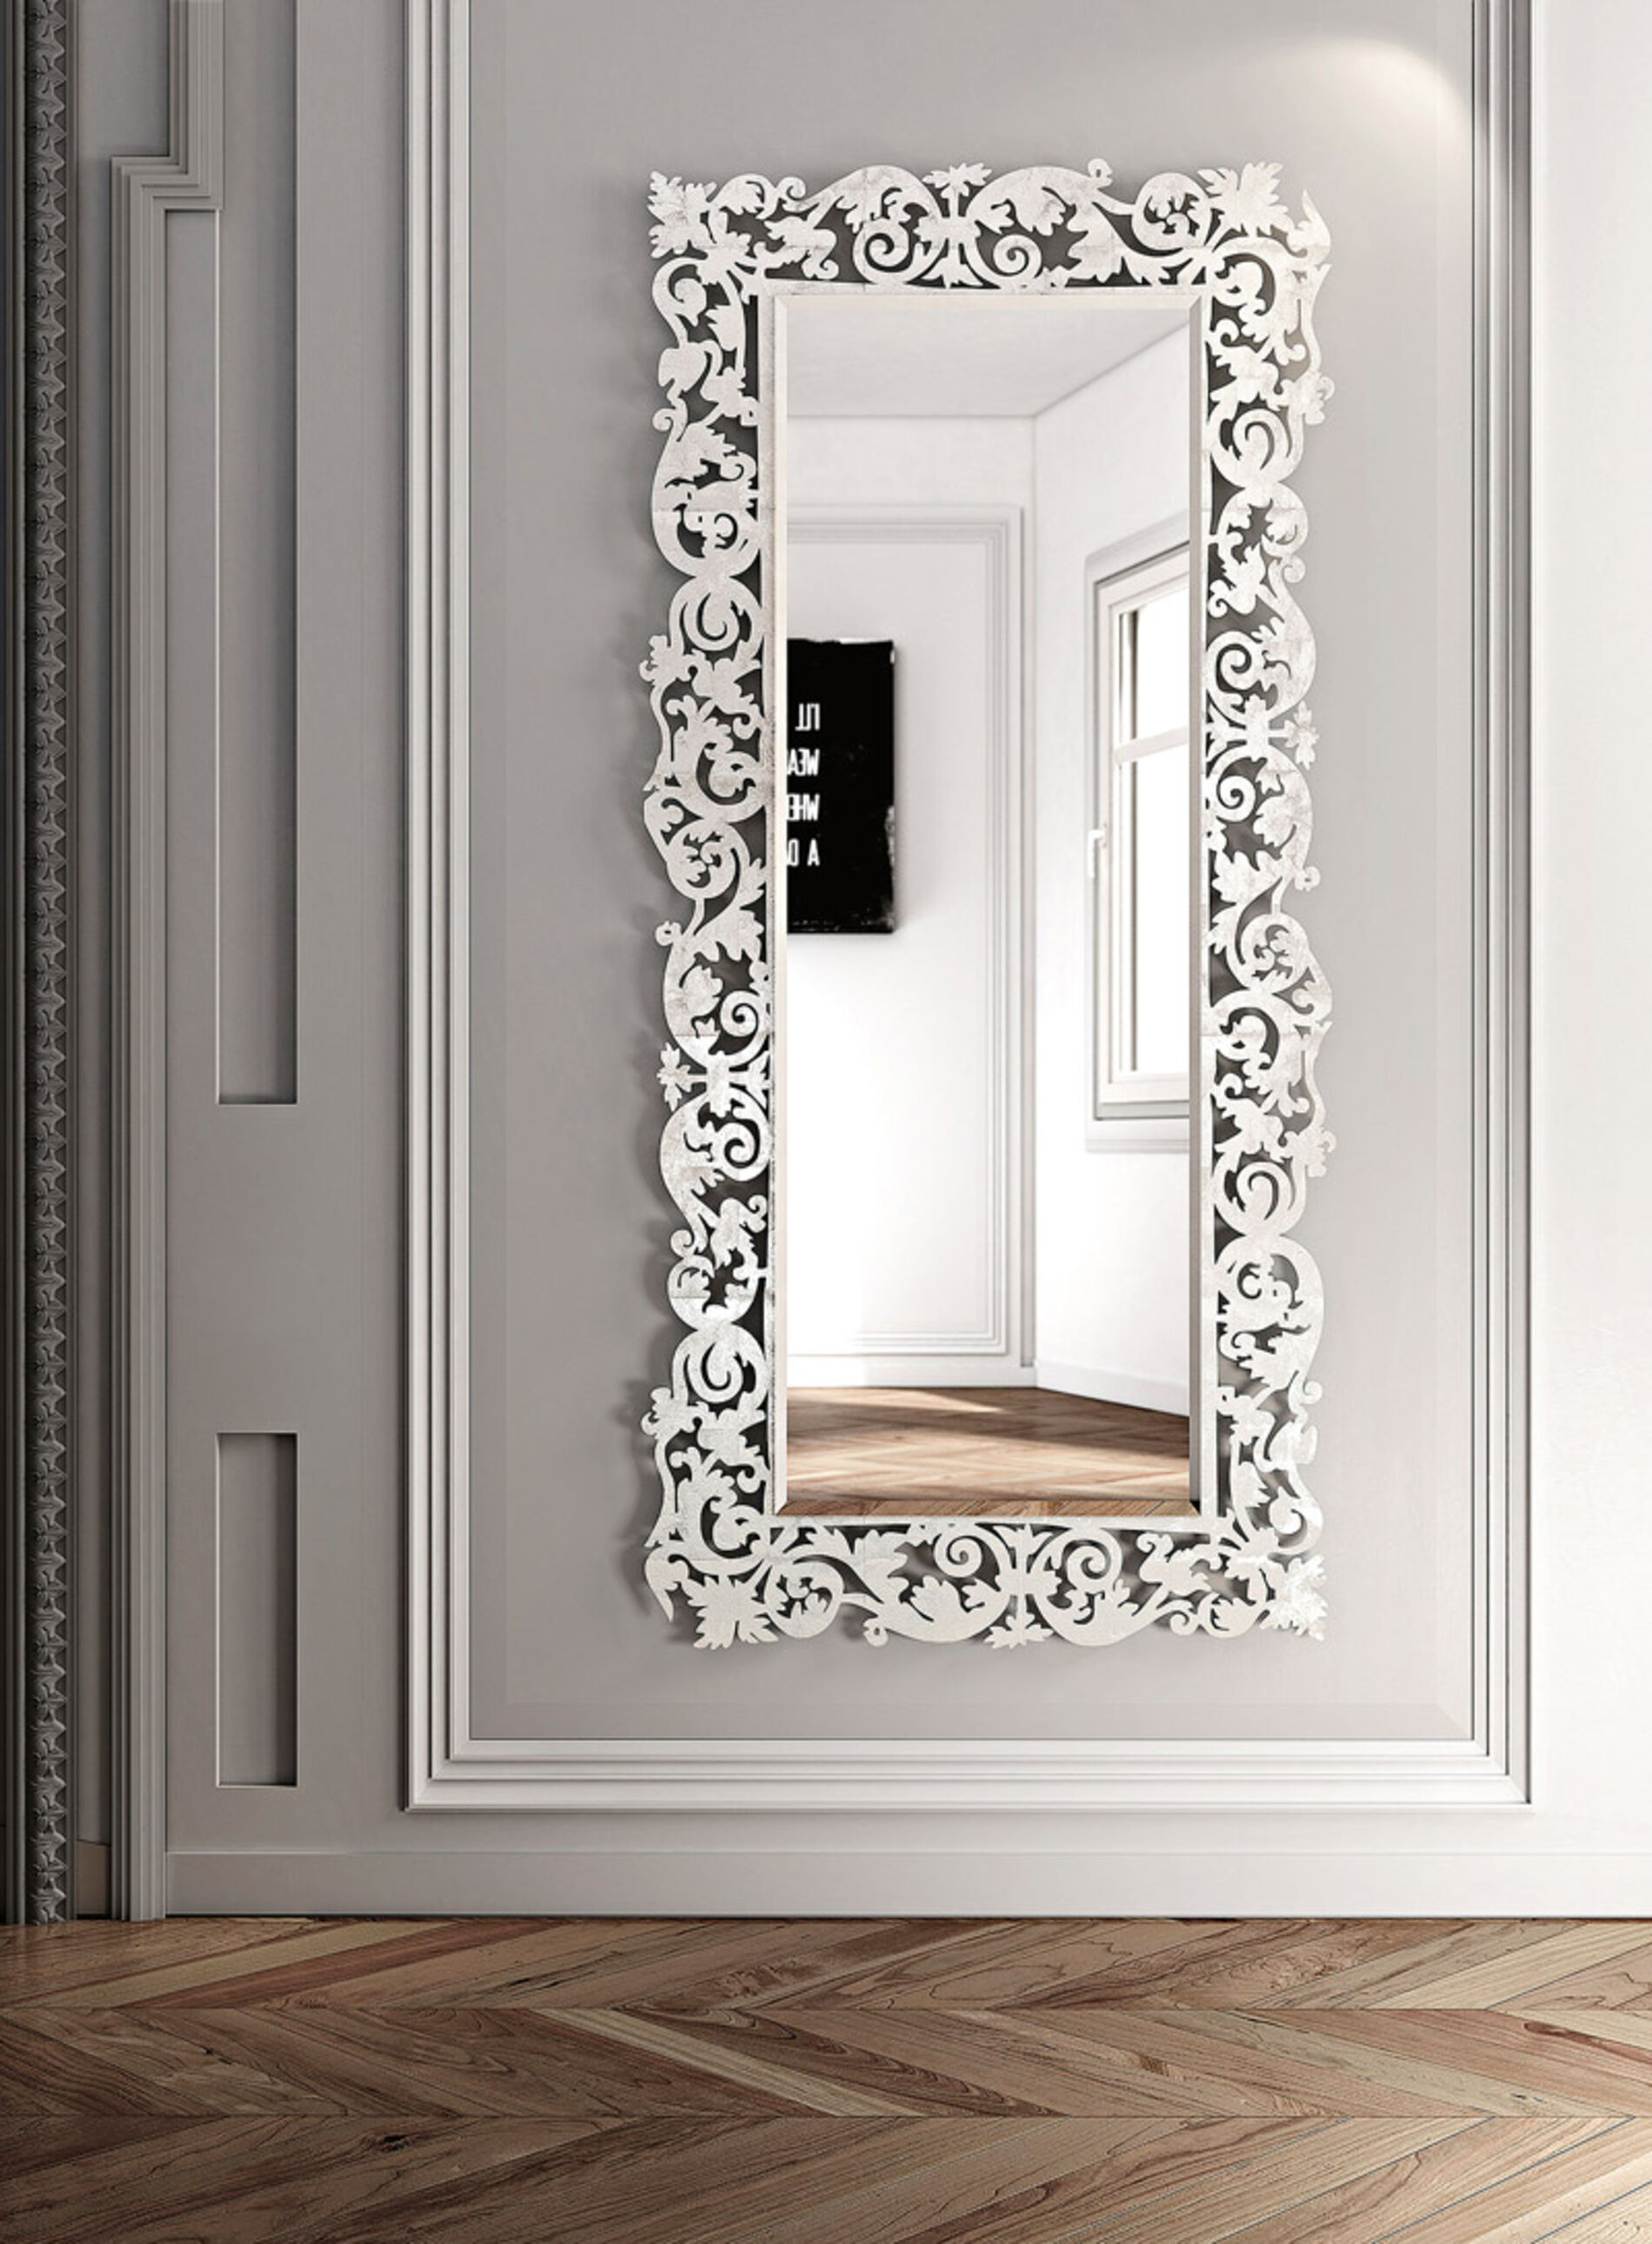 Romantico, specchio da parete con cornice floreale - Riflessi